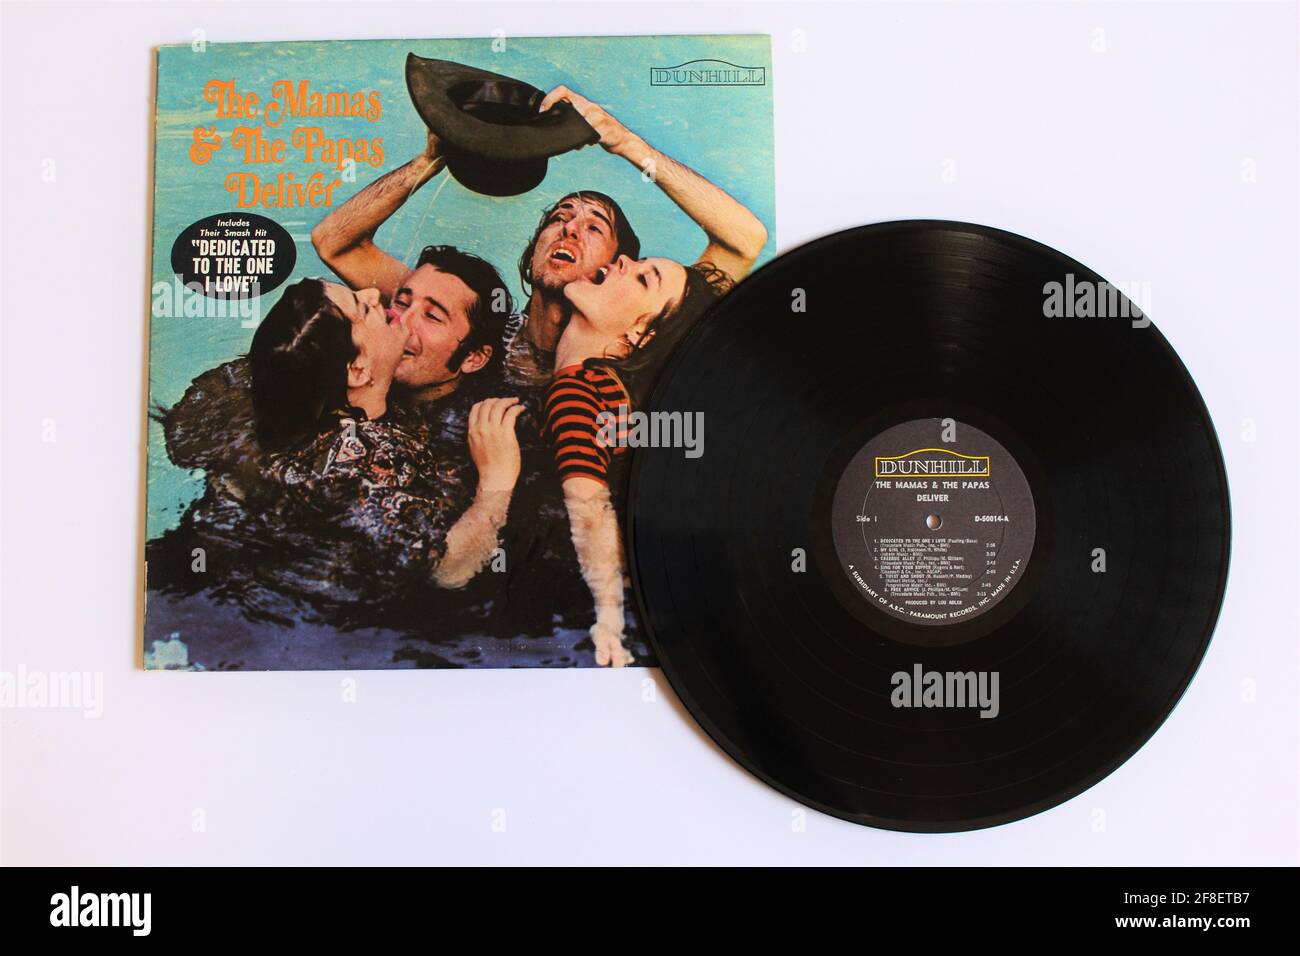 Pop- und Folk-Rock-Band, die Mamas und die Papas, Musikalbum auf Vinyl-LP-Schallplatte. Titel: Deliver Stockfoto